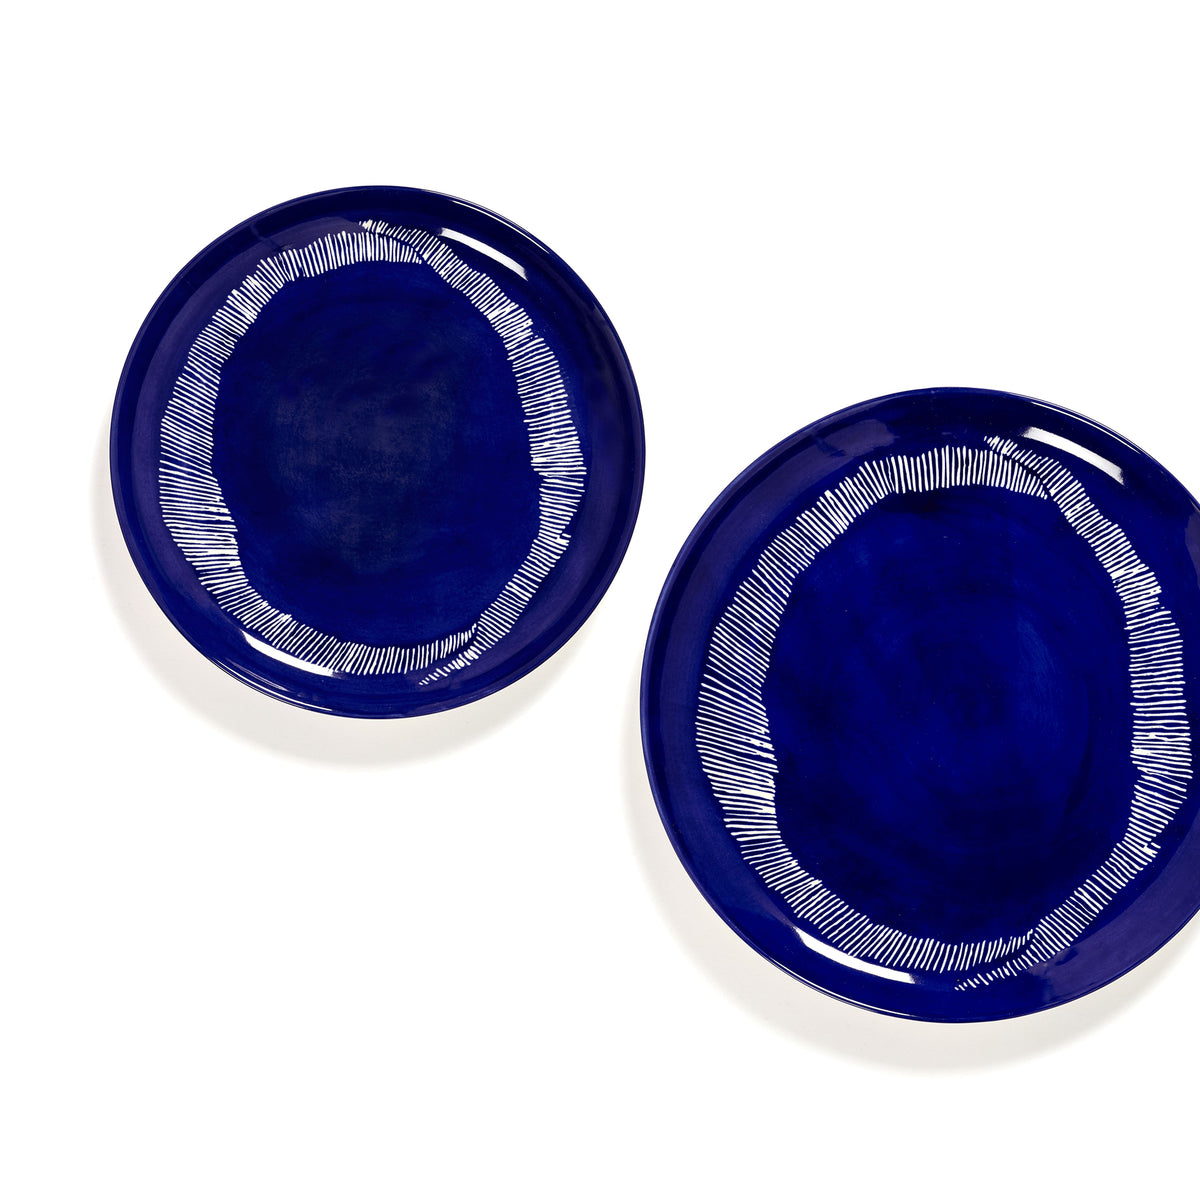 Lapis Lazuli Plate with White Stripes - M